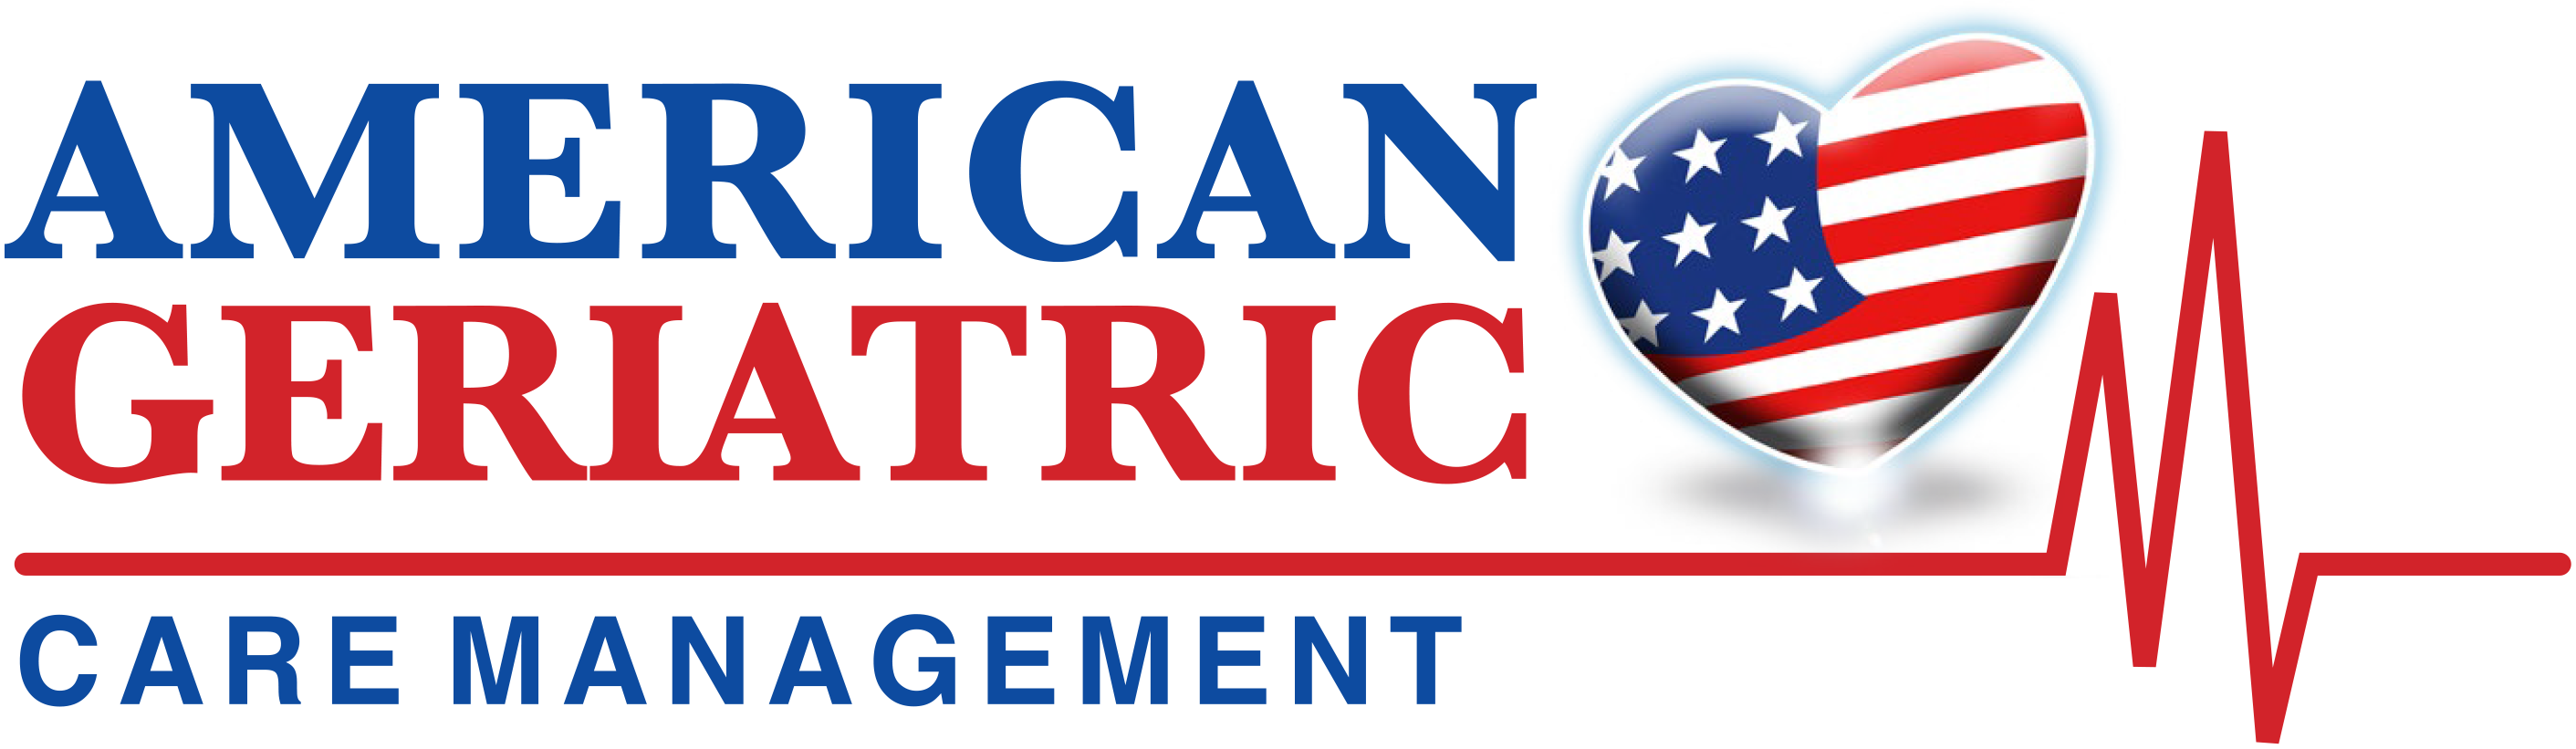 American Geriatric Care Management